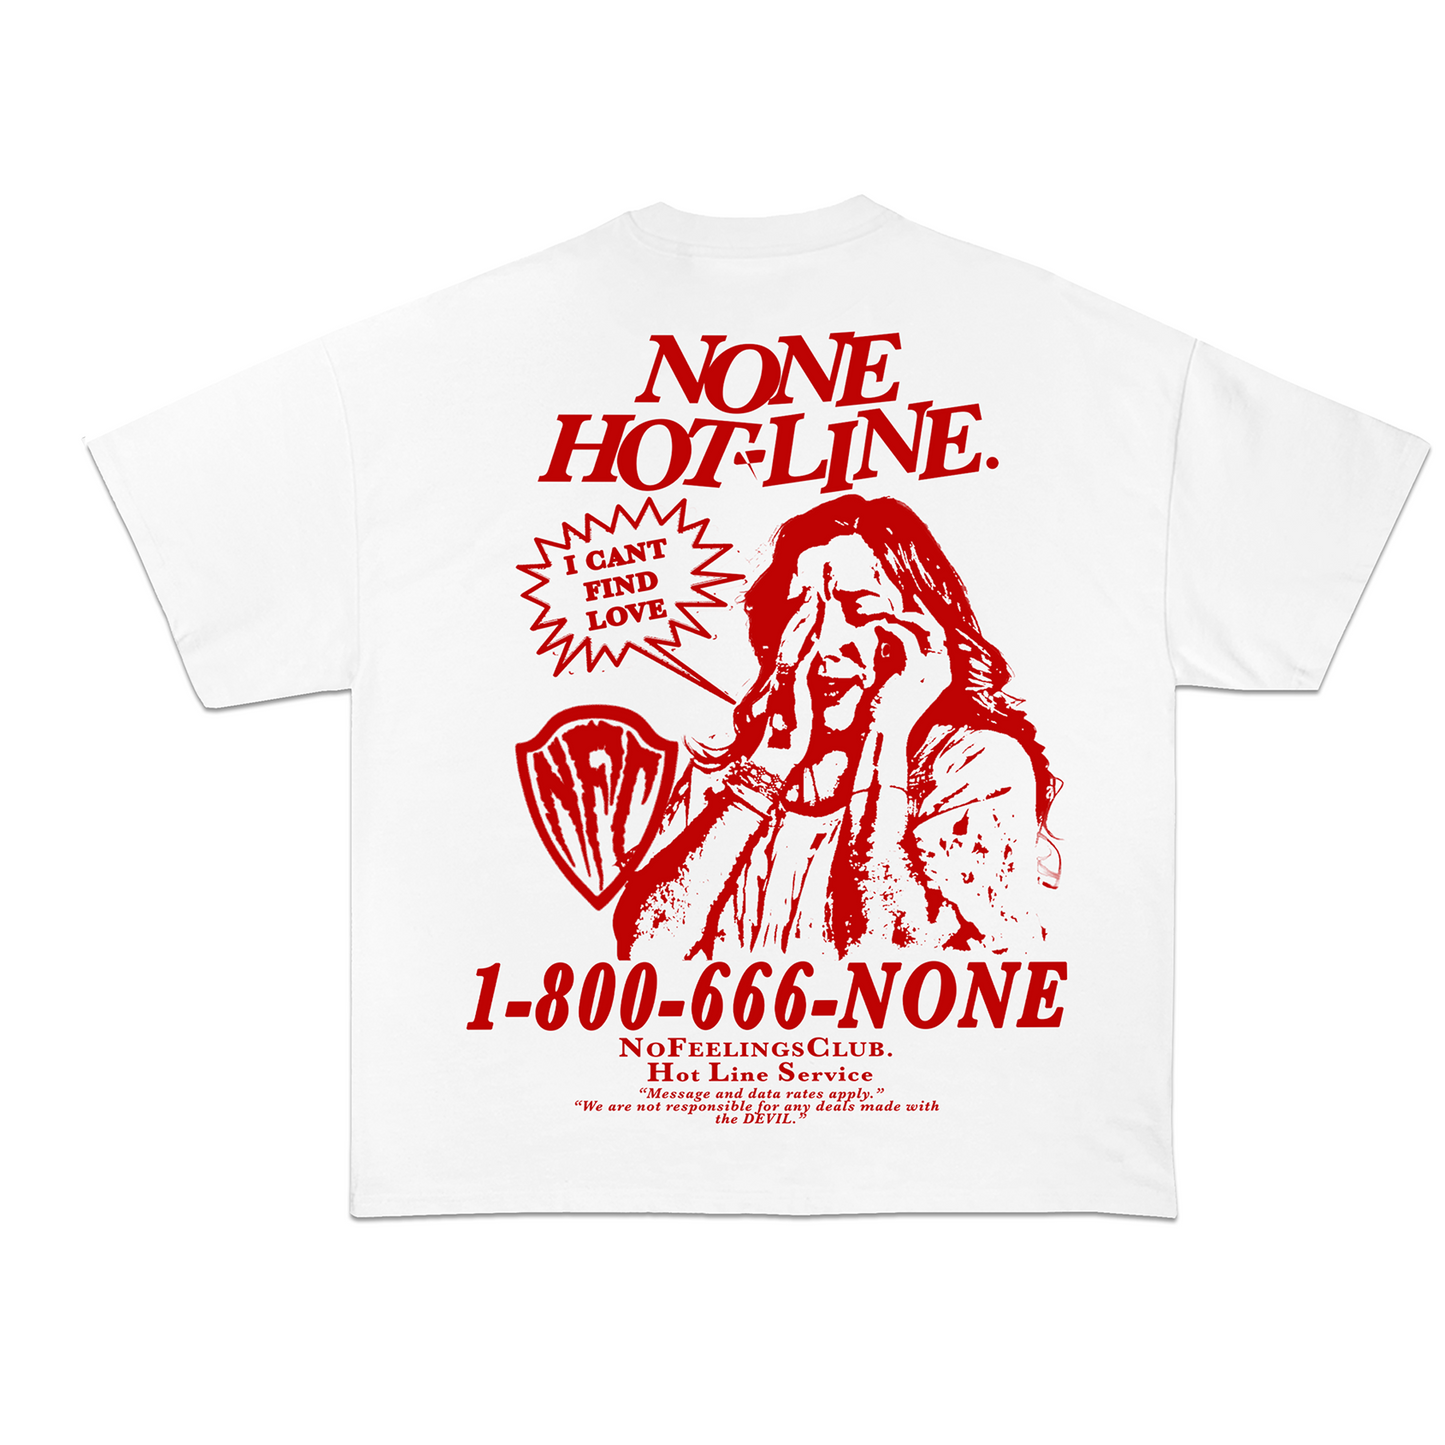 NONE HOT-LINE